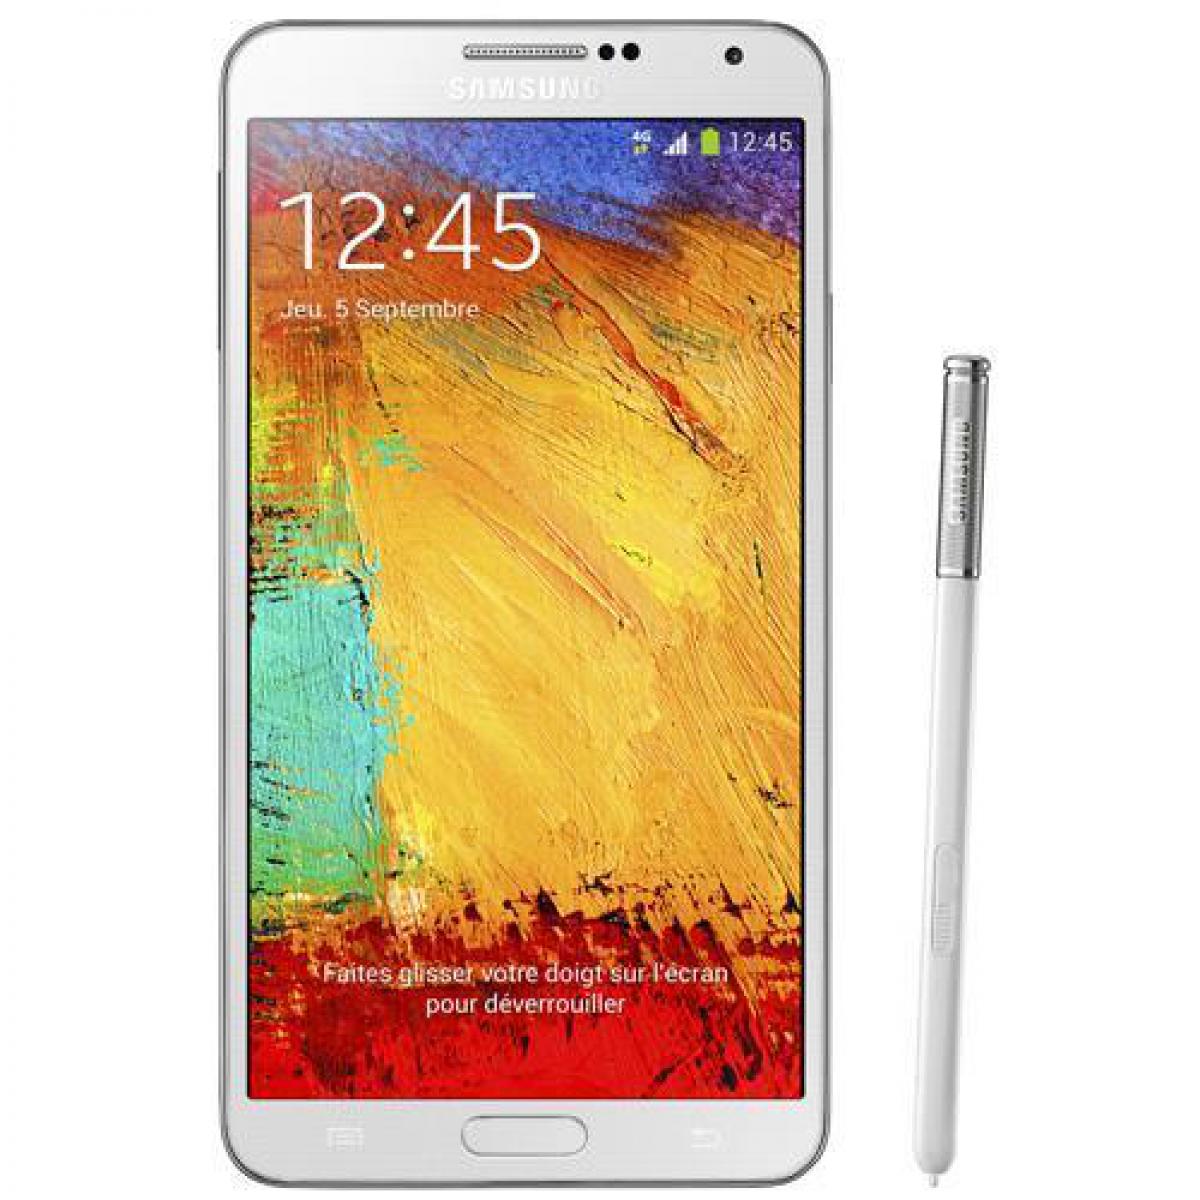 Samsung - Samsung Galaxy Note 3 32 Go Blanc - débloqué tout opérateur - Smartphone Android